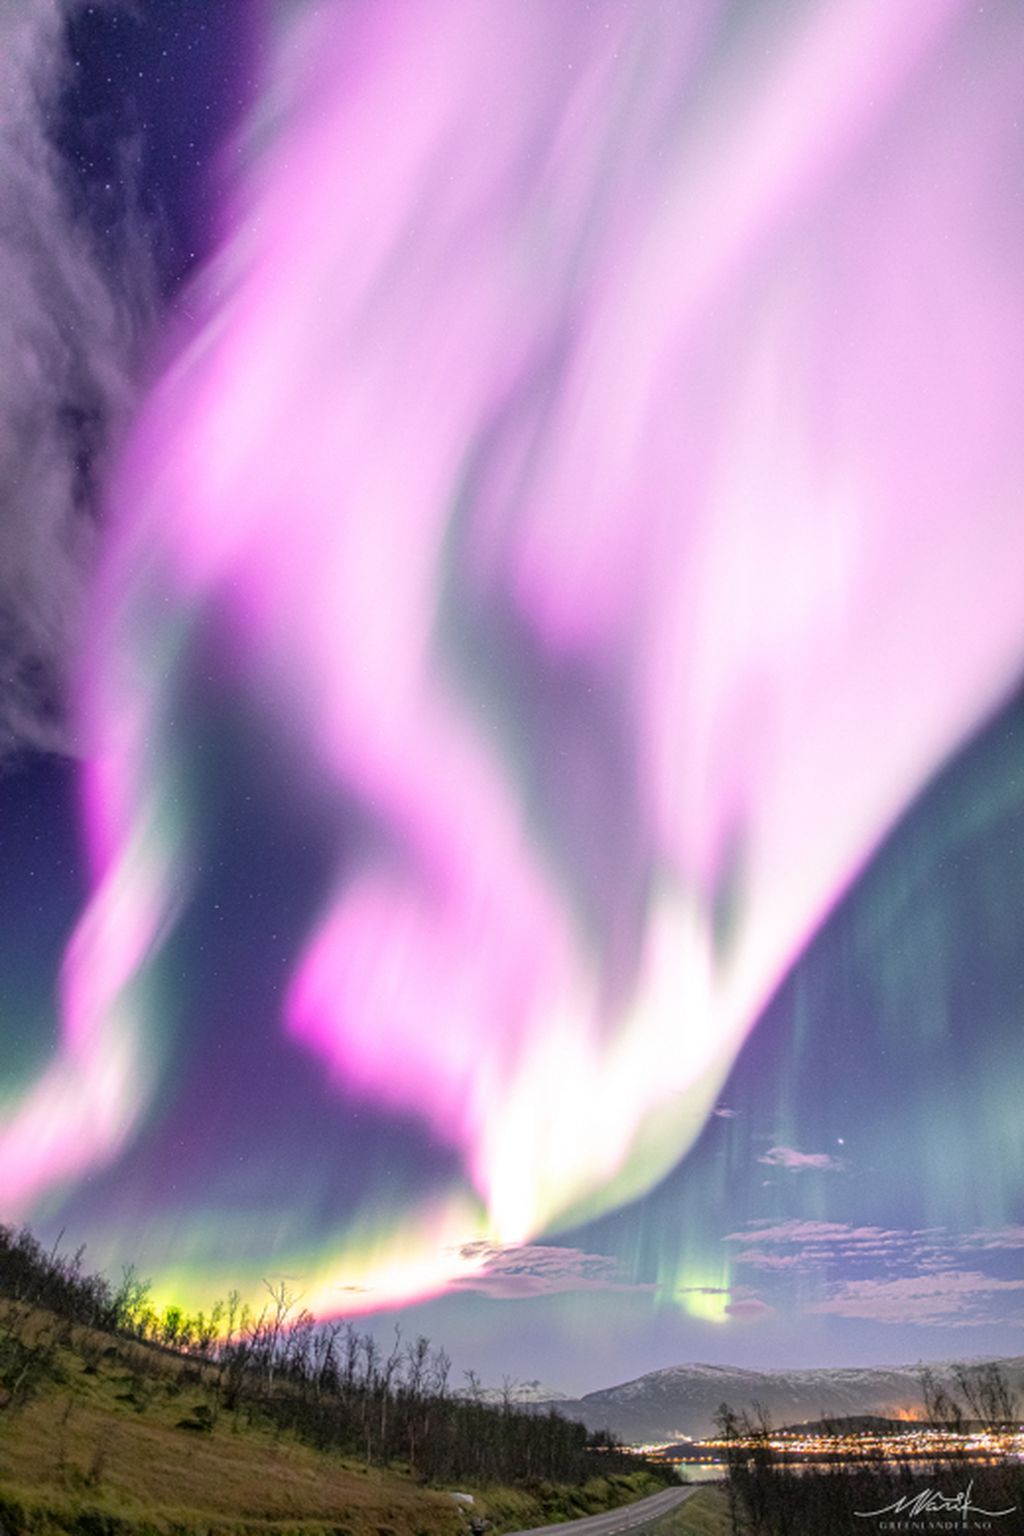 Aurora merah muda berhasil dipotret Markus Varik di atas wilayah Tromso, Norwegia bagian utara, pada 3 November 2022. Aurora merah muda ini langka karena umumnya aurora berwarna hijau. Potret ini kemudian diunggah ke situs Space Weather.